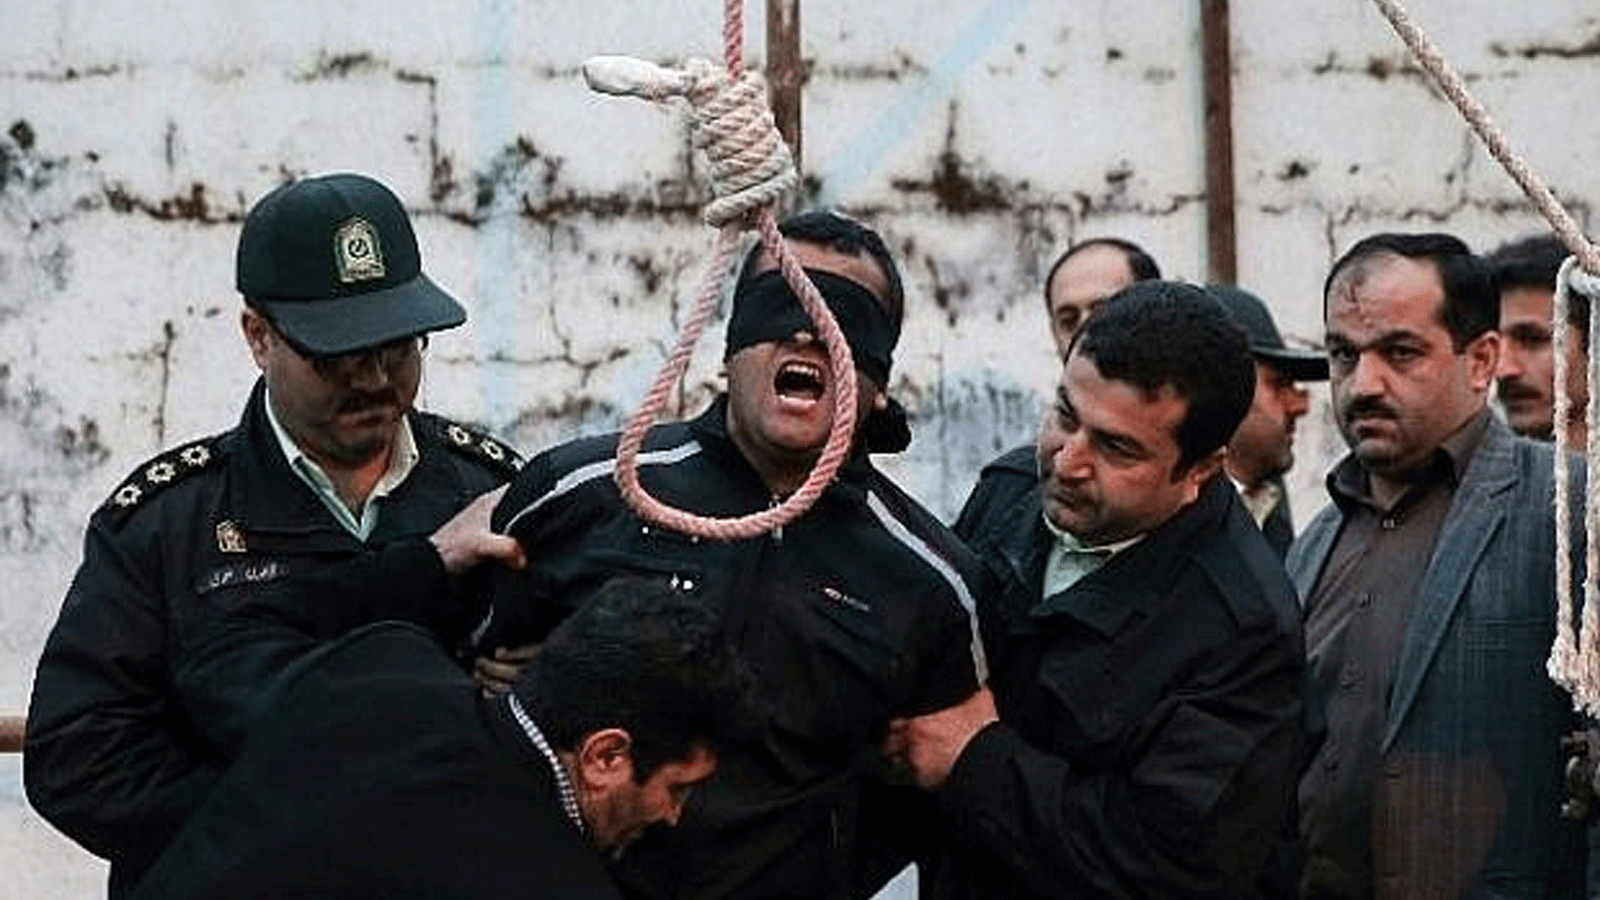 صورة توضيحية لعملية إعدام في إيران